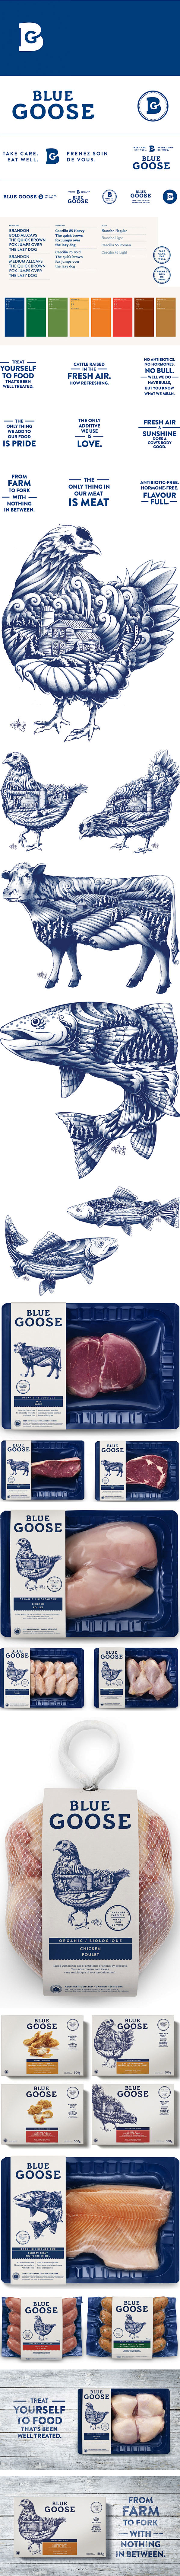 全新蓝色有机肉类食品包装设计 - 视觉同...